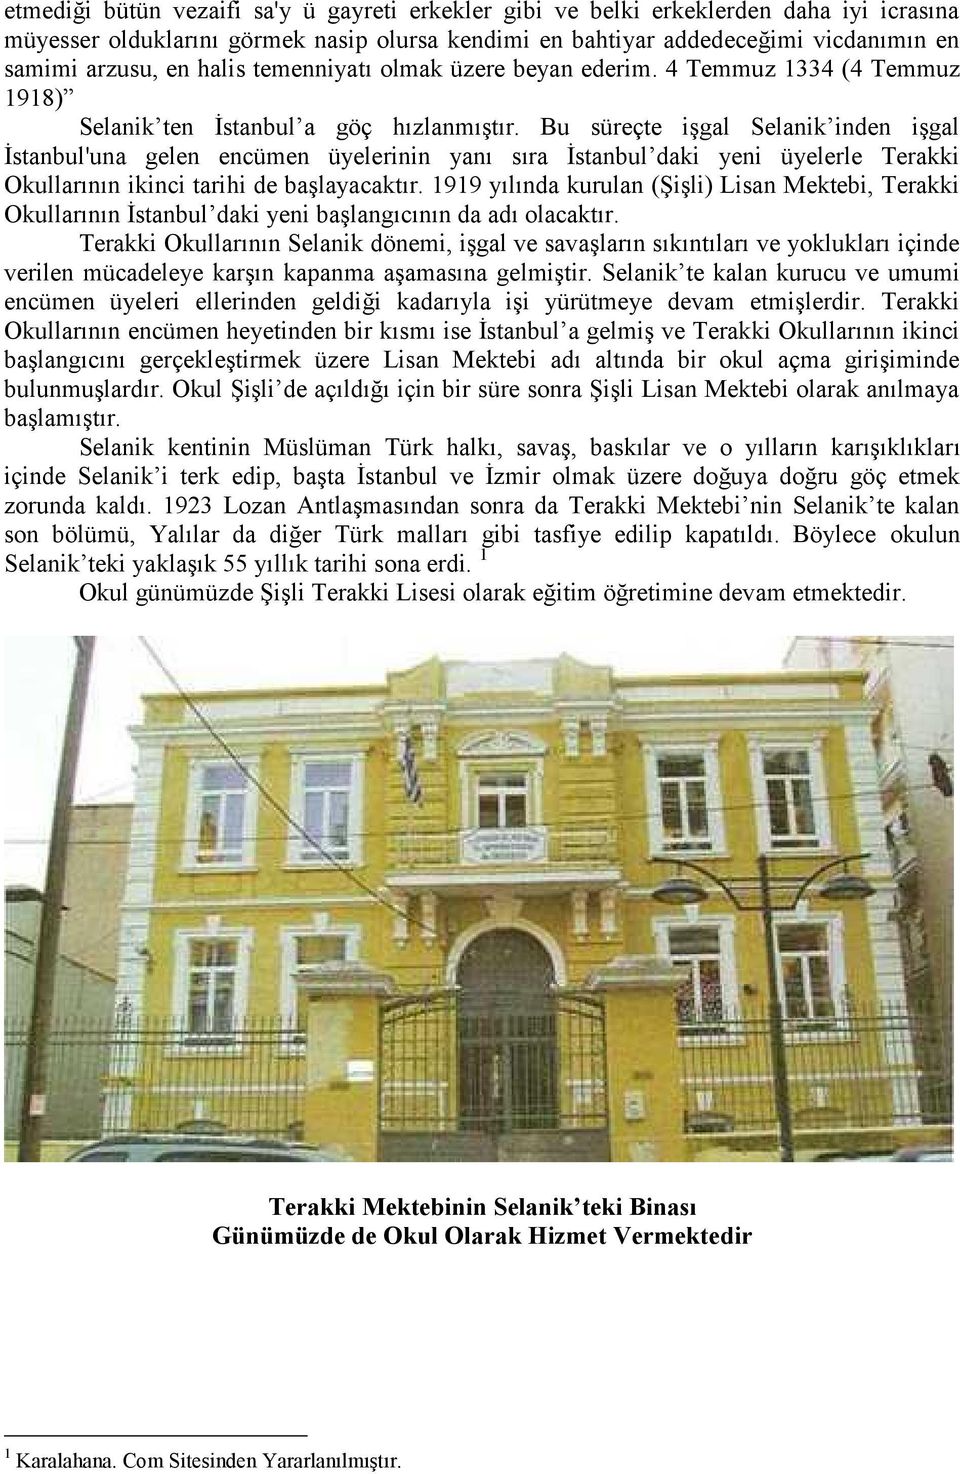 Bu süreçte işgal Selanik inden işgal İstanbul'una gelen encümen üyelerinin yanı sıra İstanbul daki yeni üyelerle Terakki Okullarının ikinci tarihi de başlayacaktır.